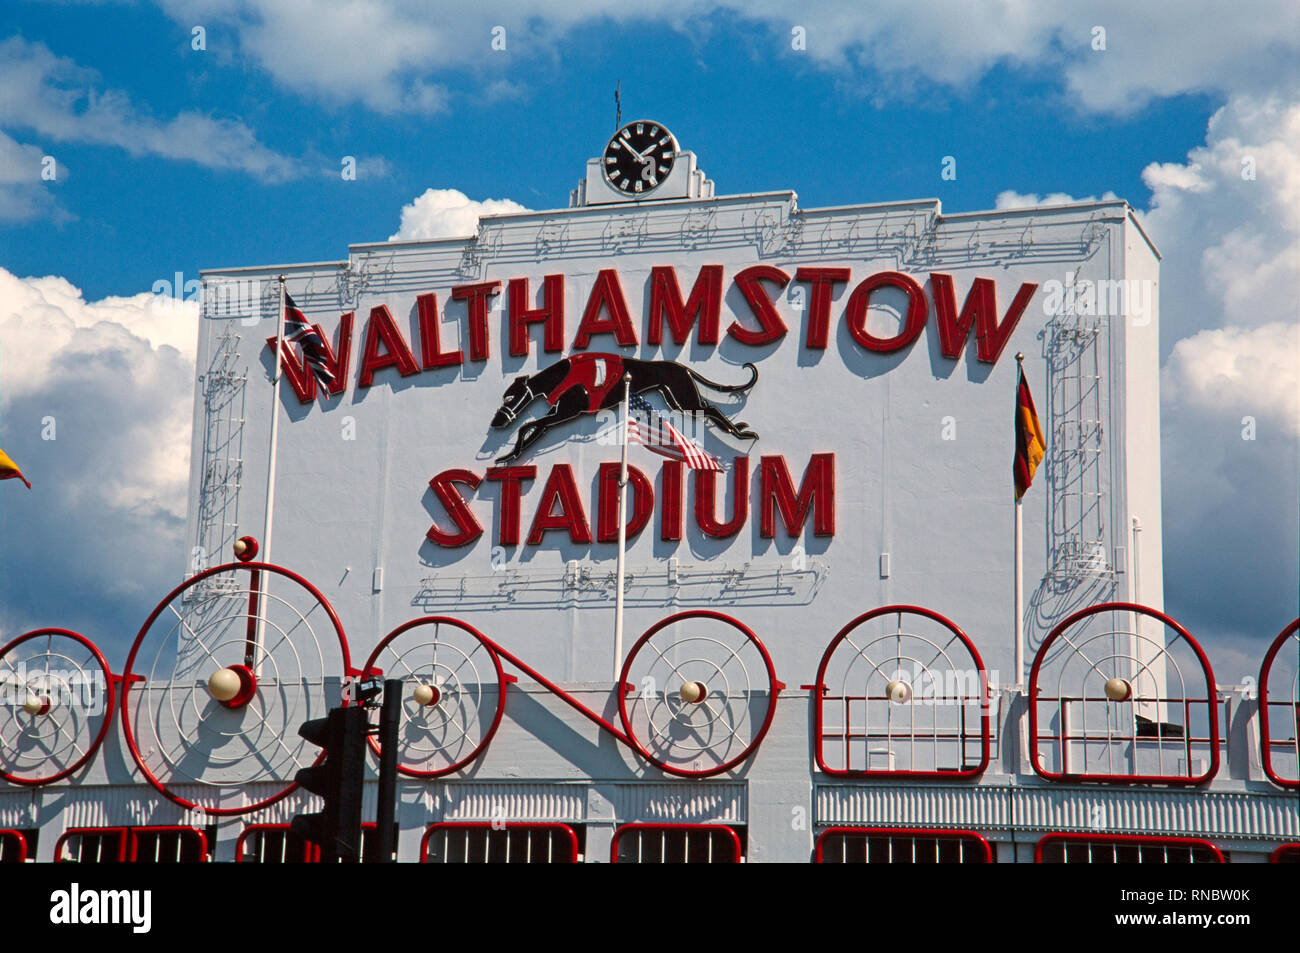 Walthamstow Stadium à Londres. Photographie prise en 2003. Walthamstow Stadium était une piste de course de lévriers situé dans le London Borough de Waltham Forest dans l'Est de Londres. Il était considéré comme le premier stade de courses de lévriers en Grande-Bretagne à la suite de la fermeture de la Ville Blanche en 1984. Le stade fermé le 16 août 2008. Banque D'Images